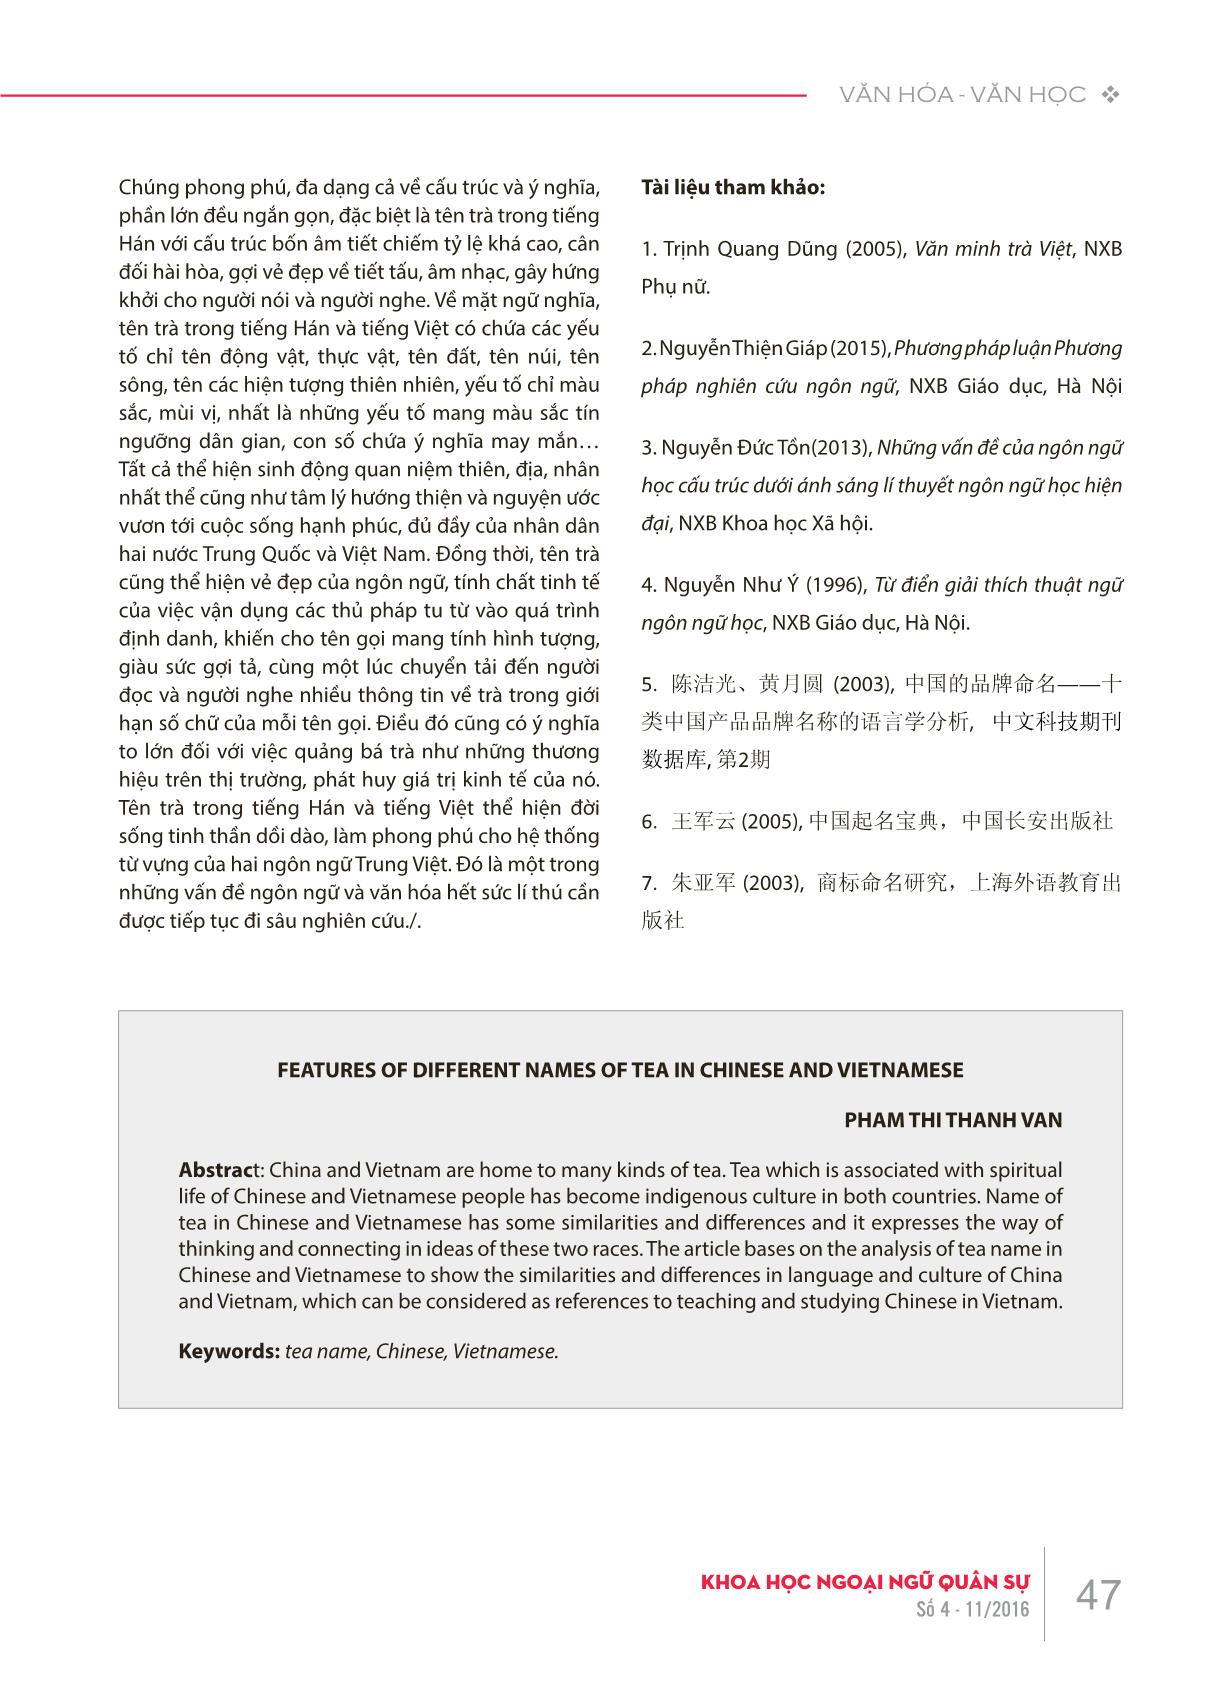 Đặc điểm tên trà trong tiếng Hán và tiếng Việt trang 6